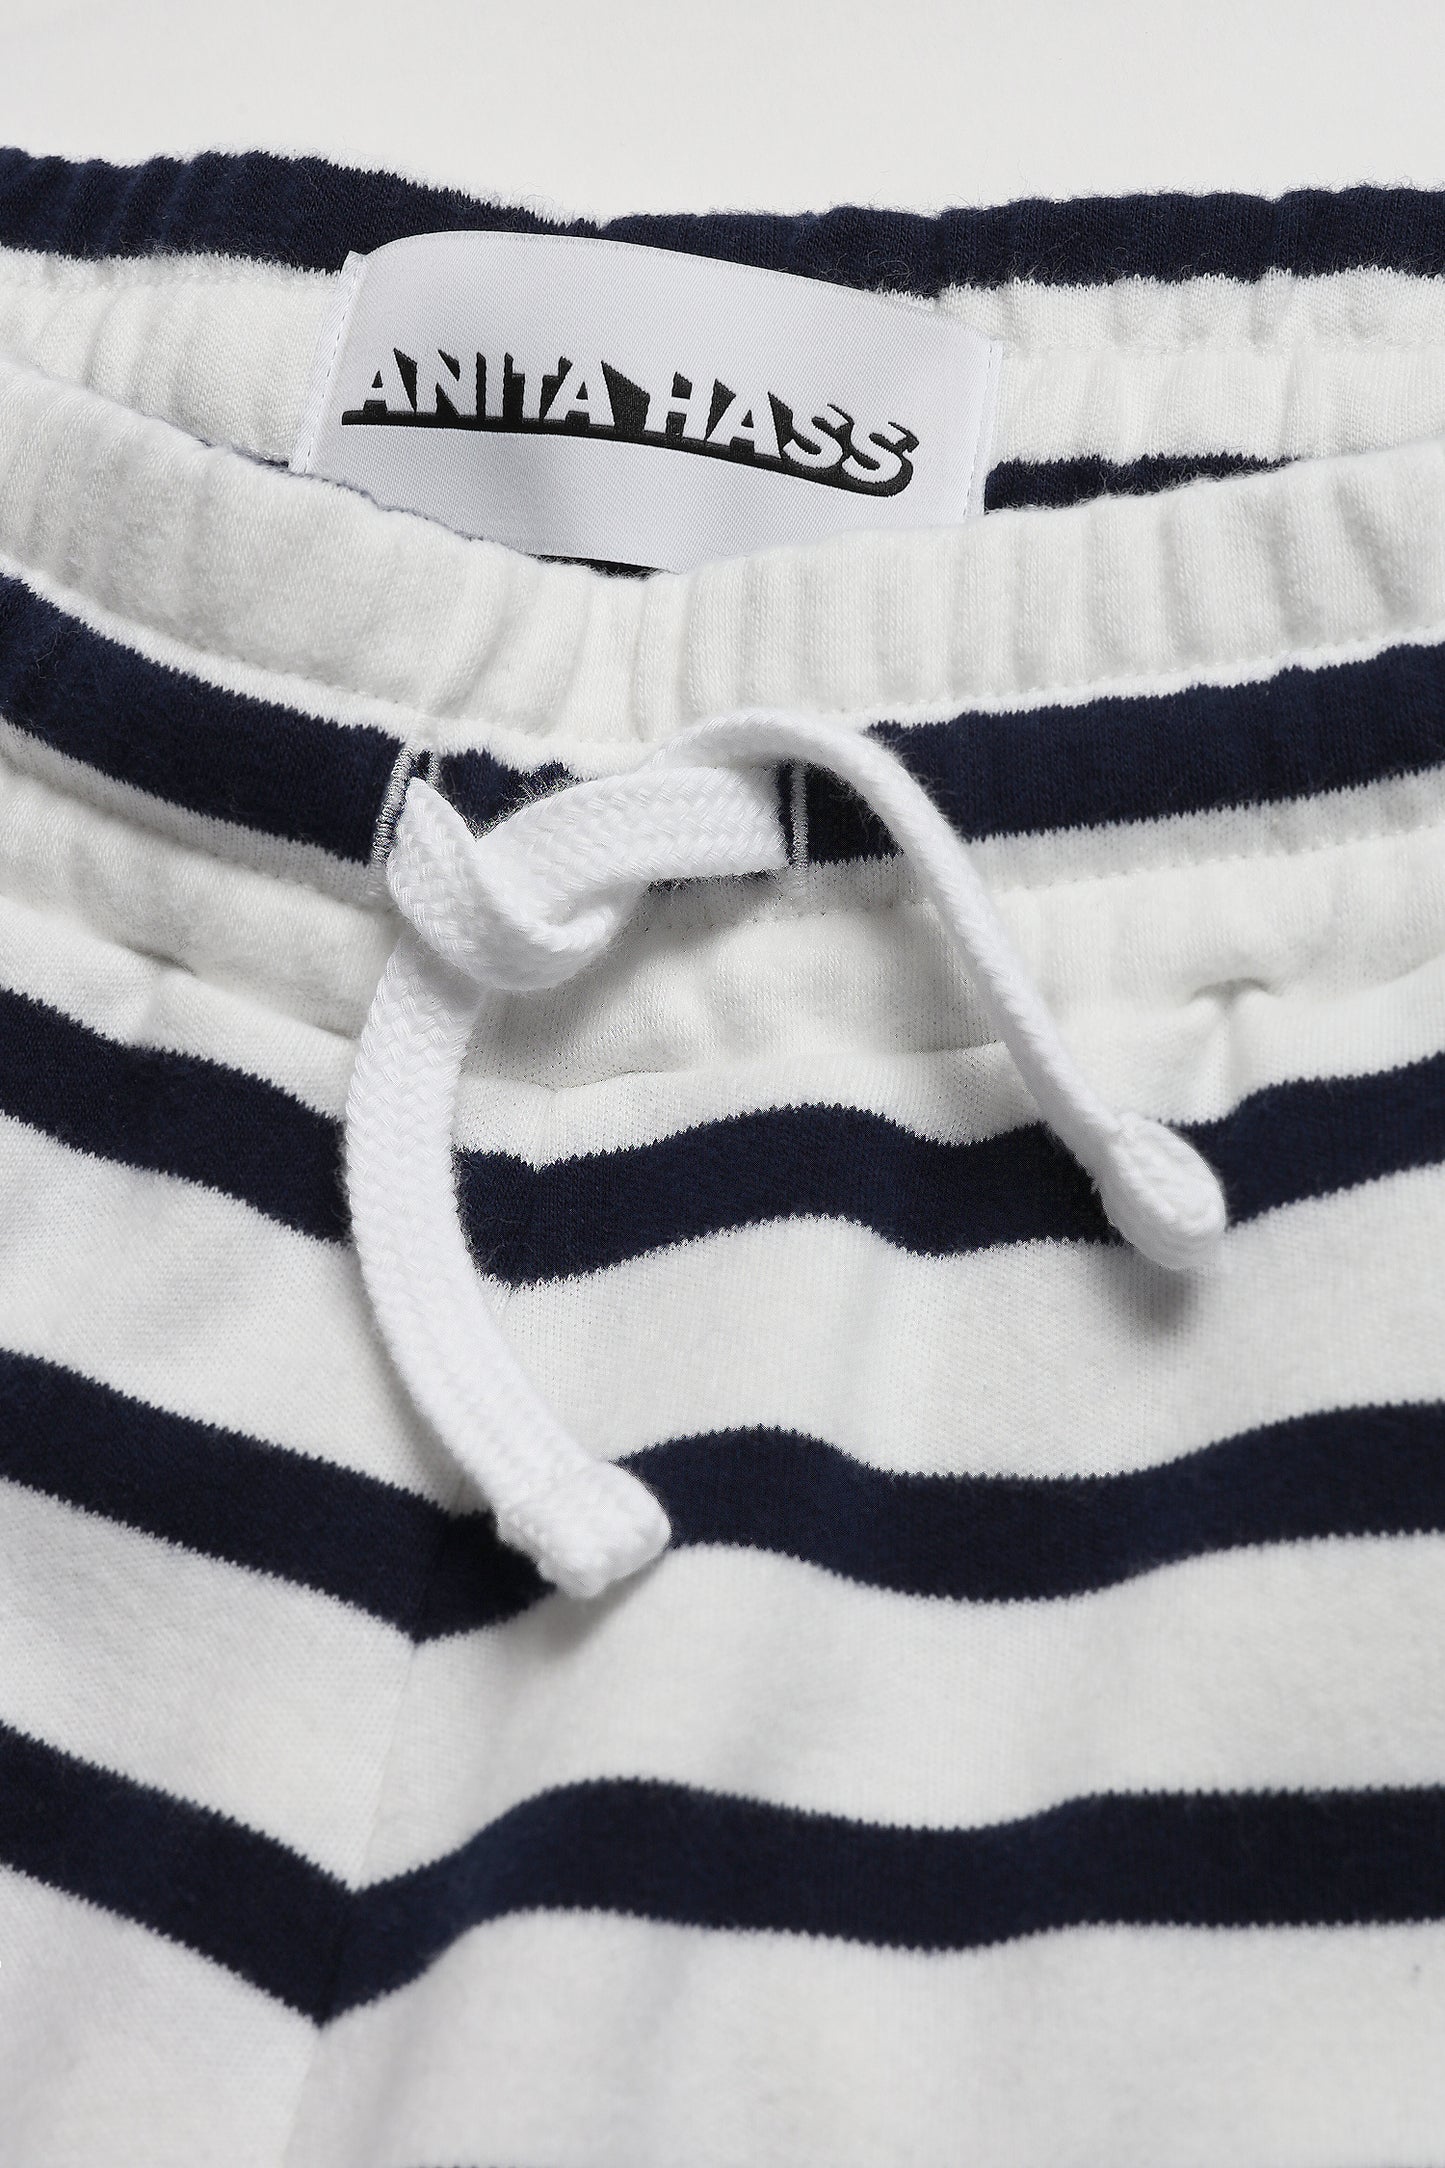 Shorts in Navy/IvoryAnita Hass - Anita Hass